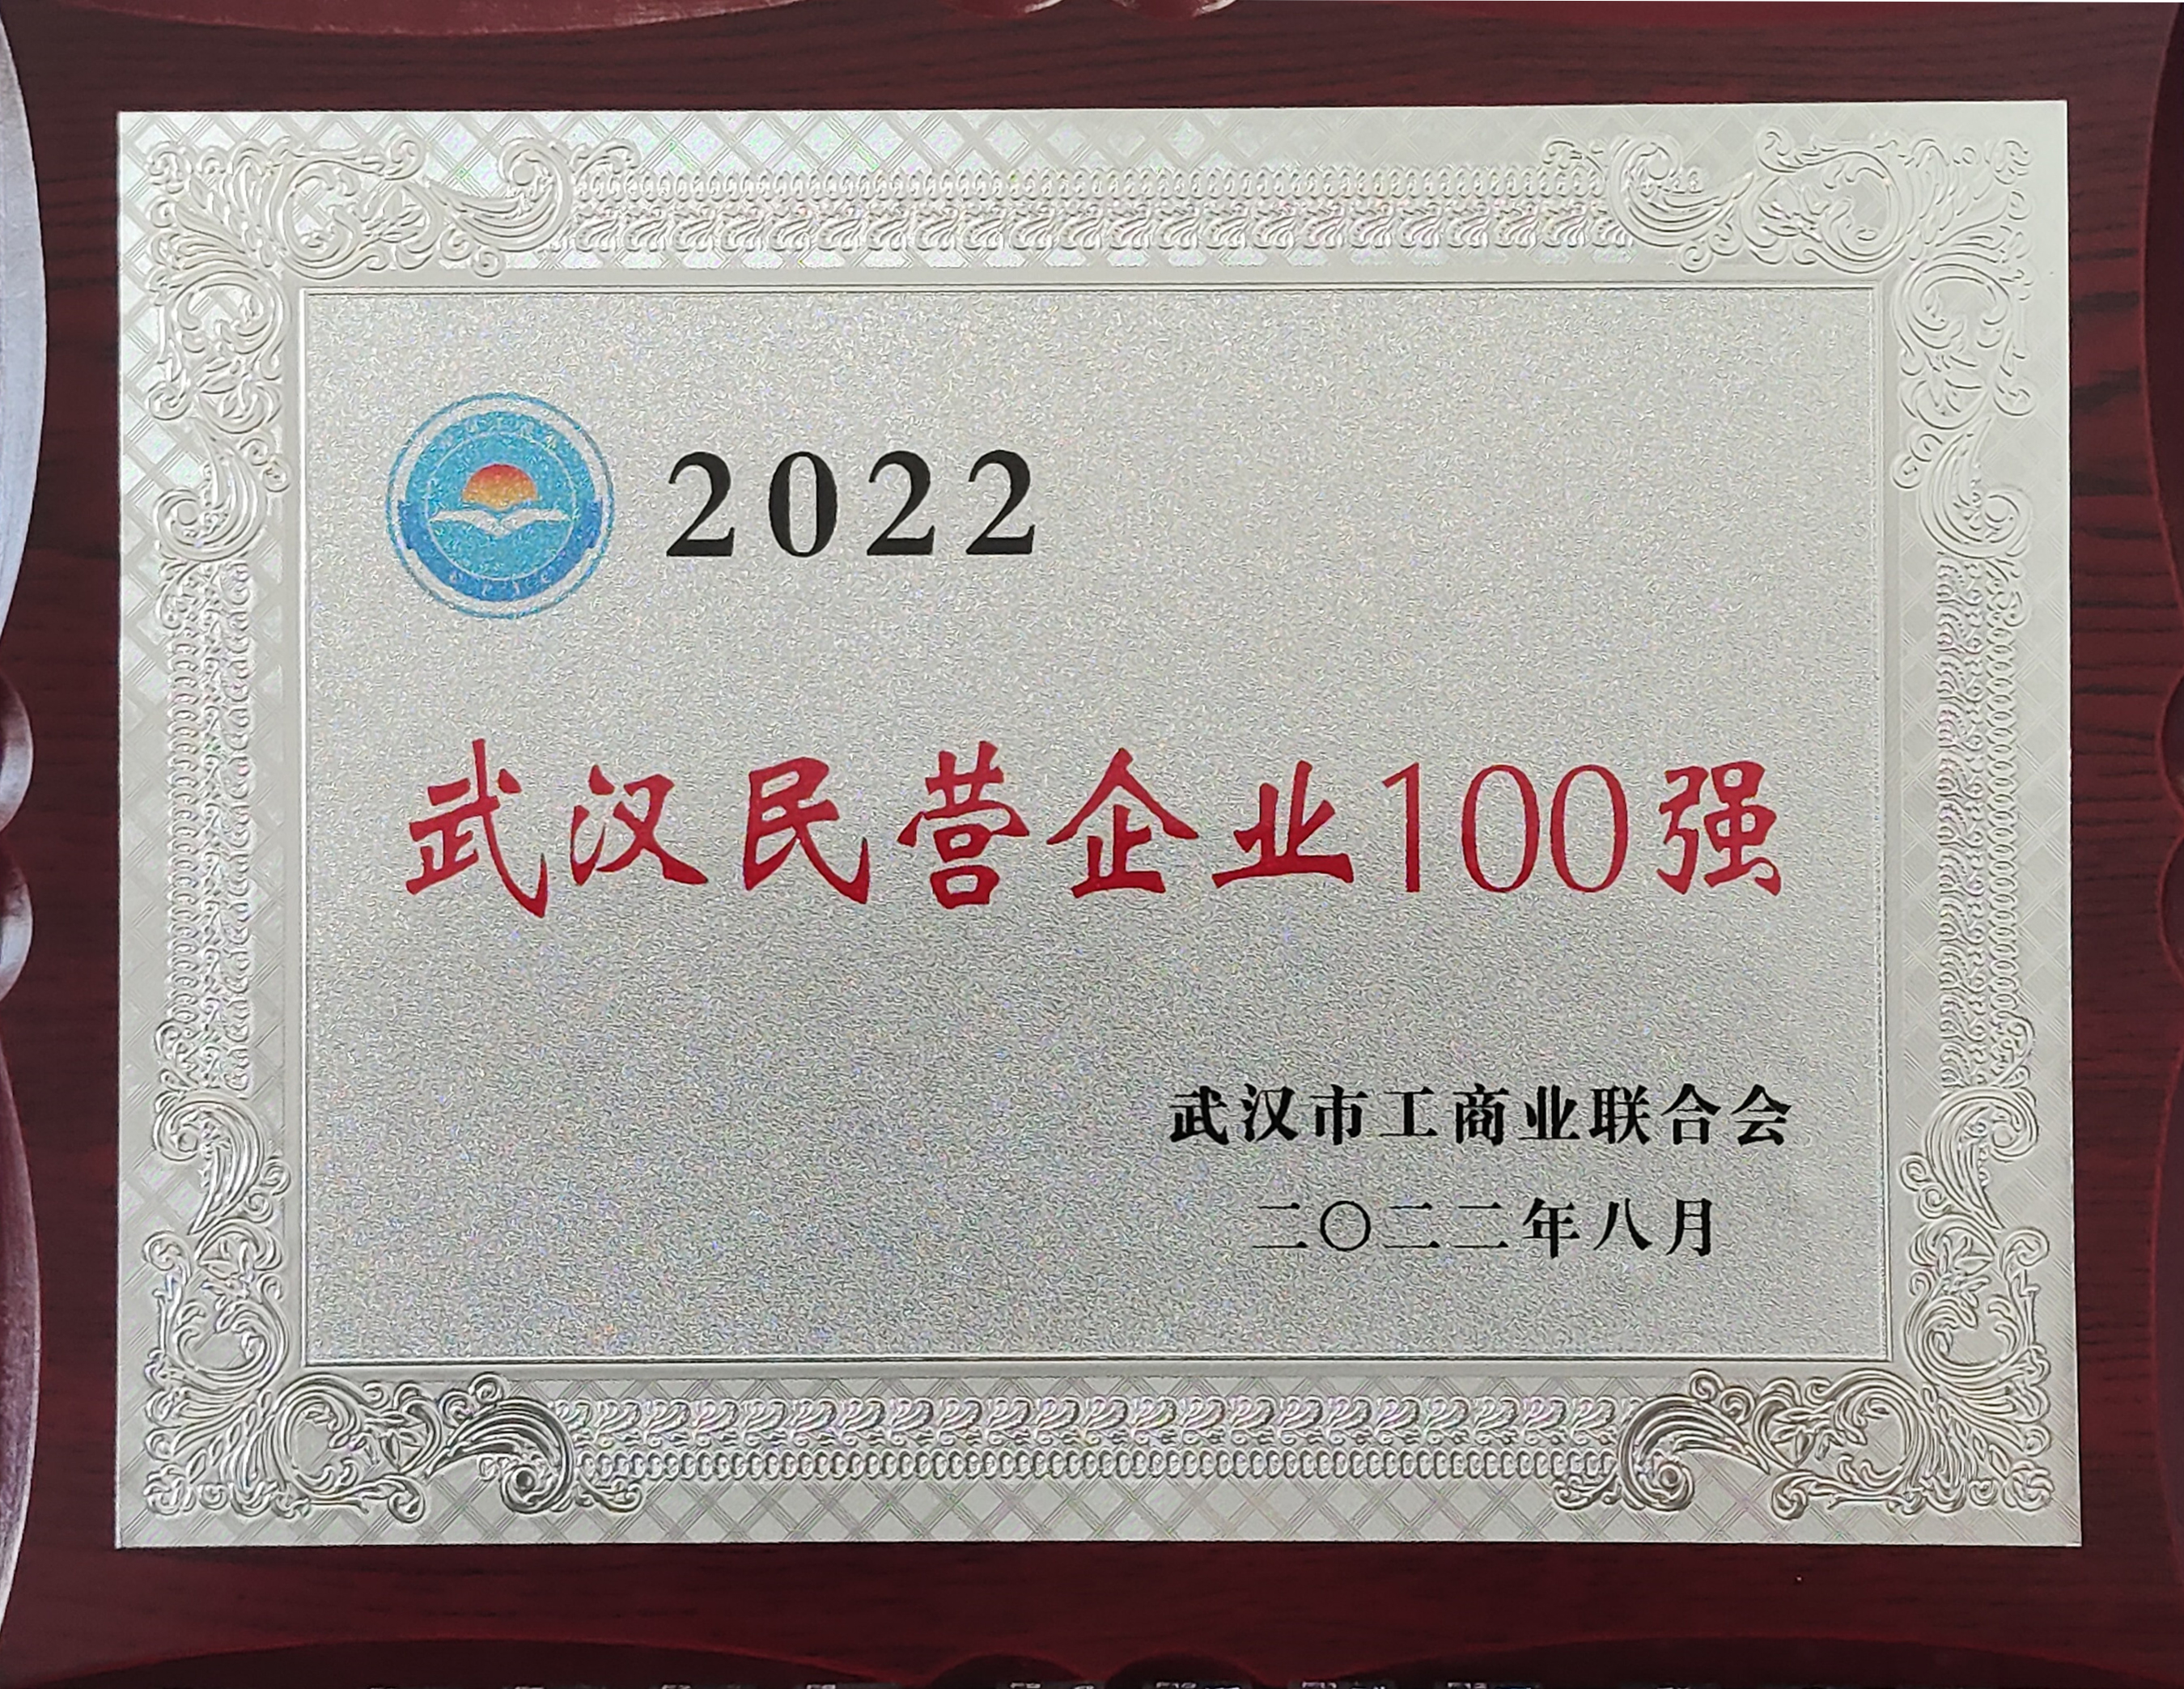  2022年武汉民营企业100强